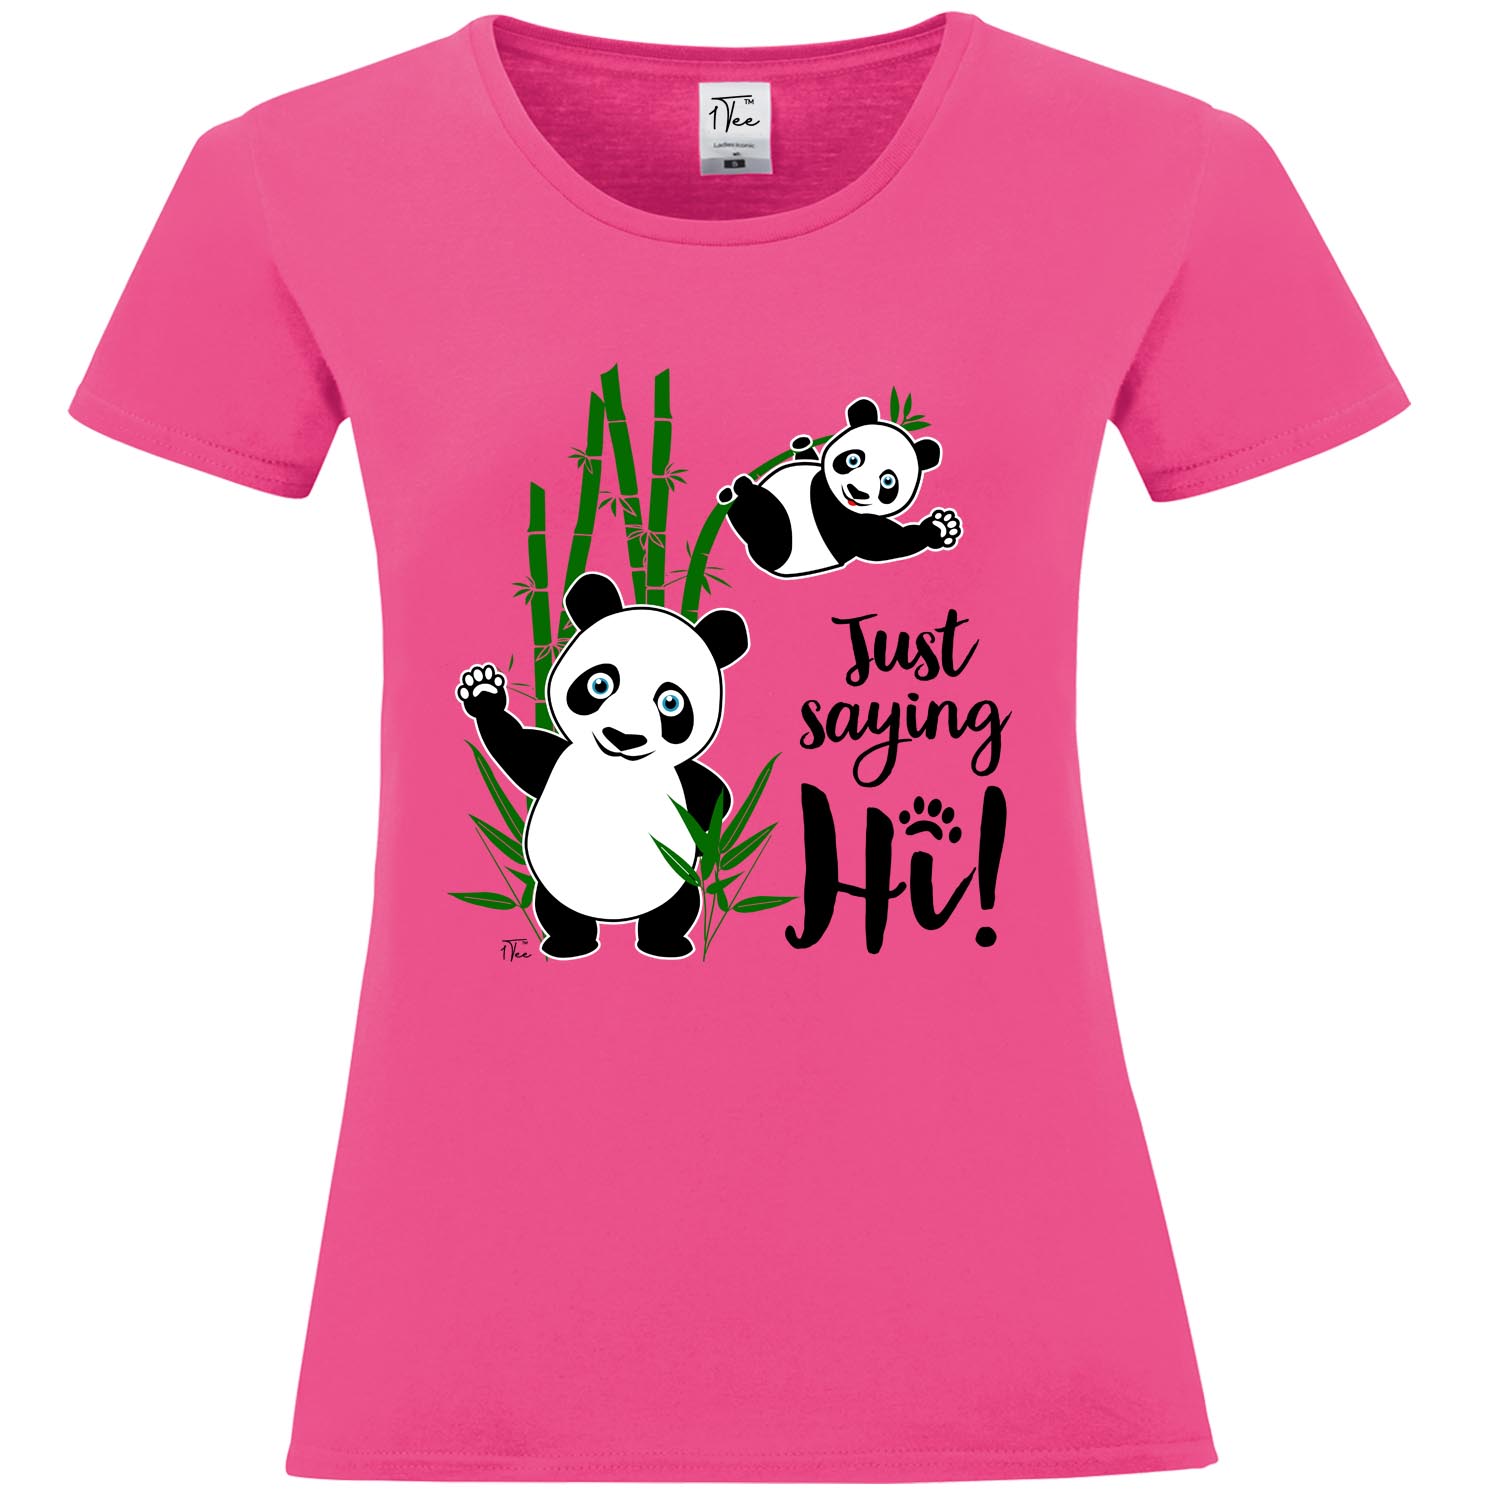 Panda T-Shirt 1Tee Girls Just Saying Hi